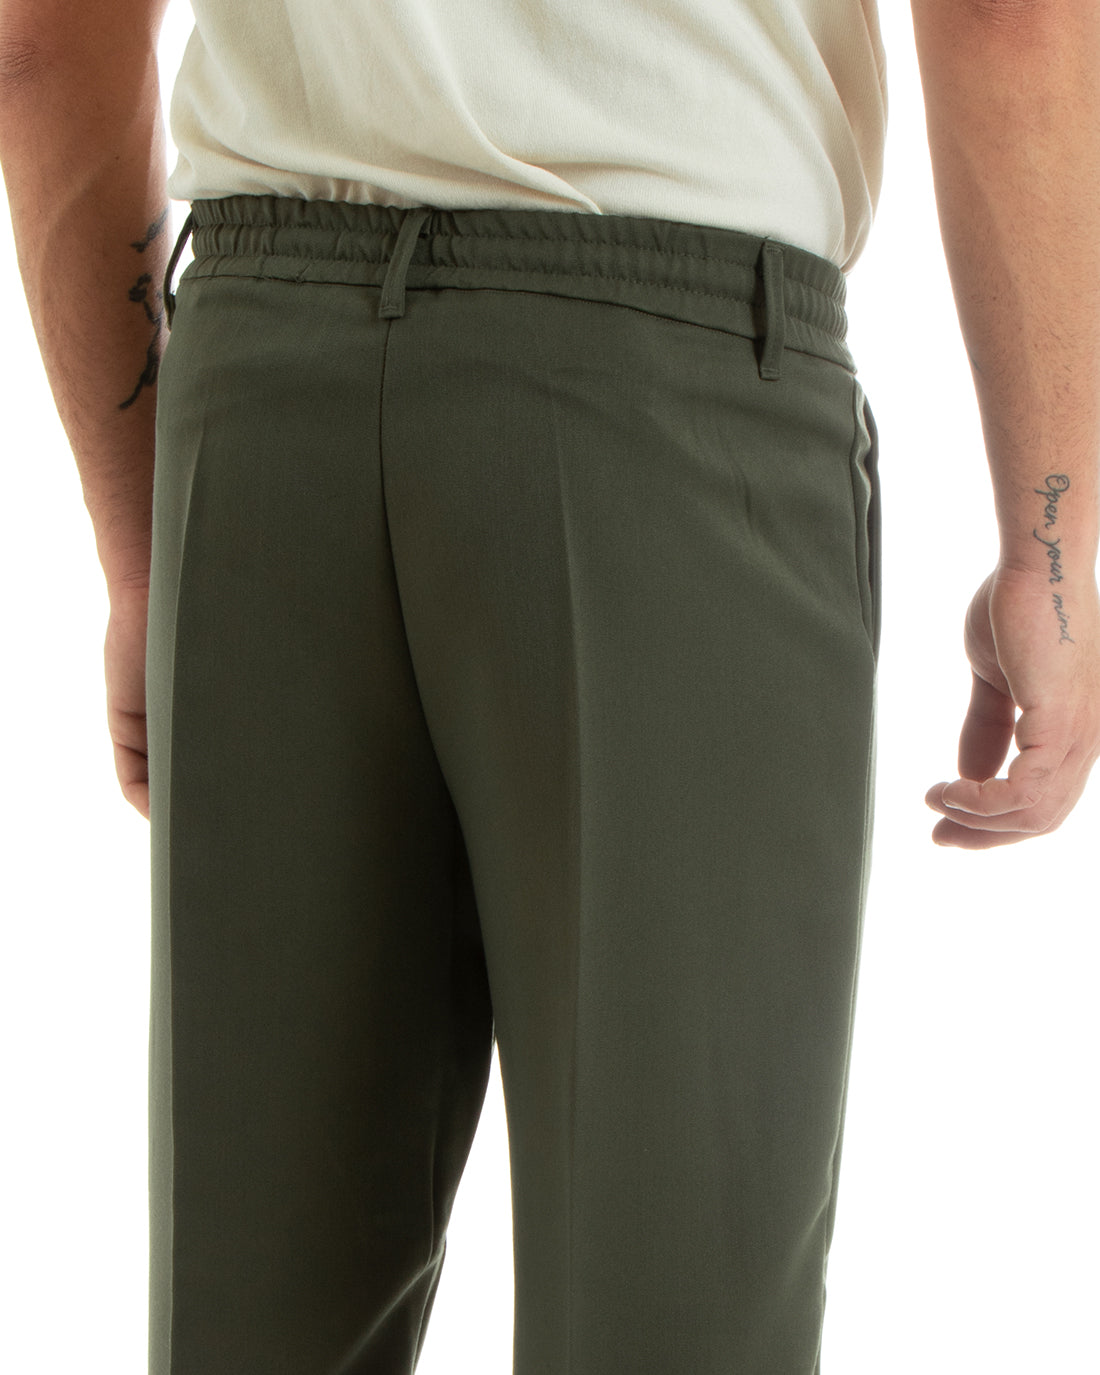 Pantaloni Uomo Baggy Lungo Fondo Largo Elastico Sul Retro Abbottonatura Allungata Verde Casual Elegante GIOSAL-P5918A